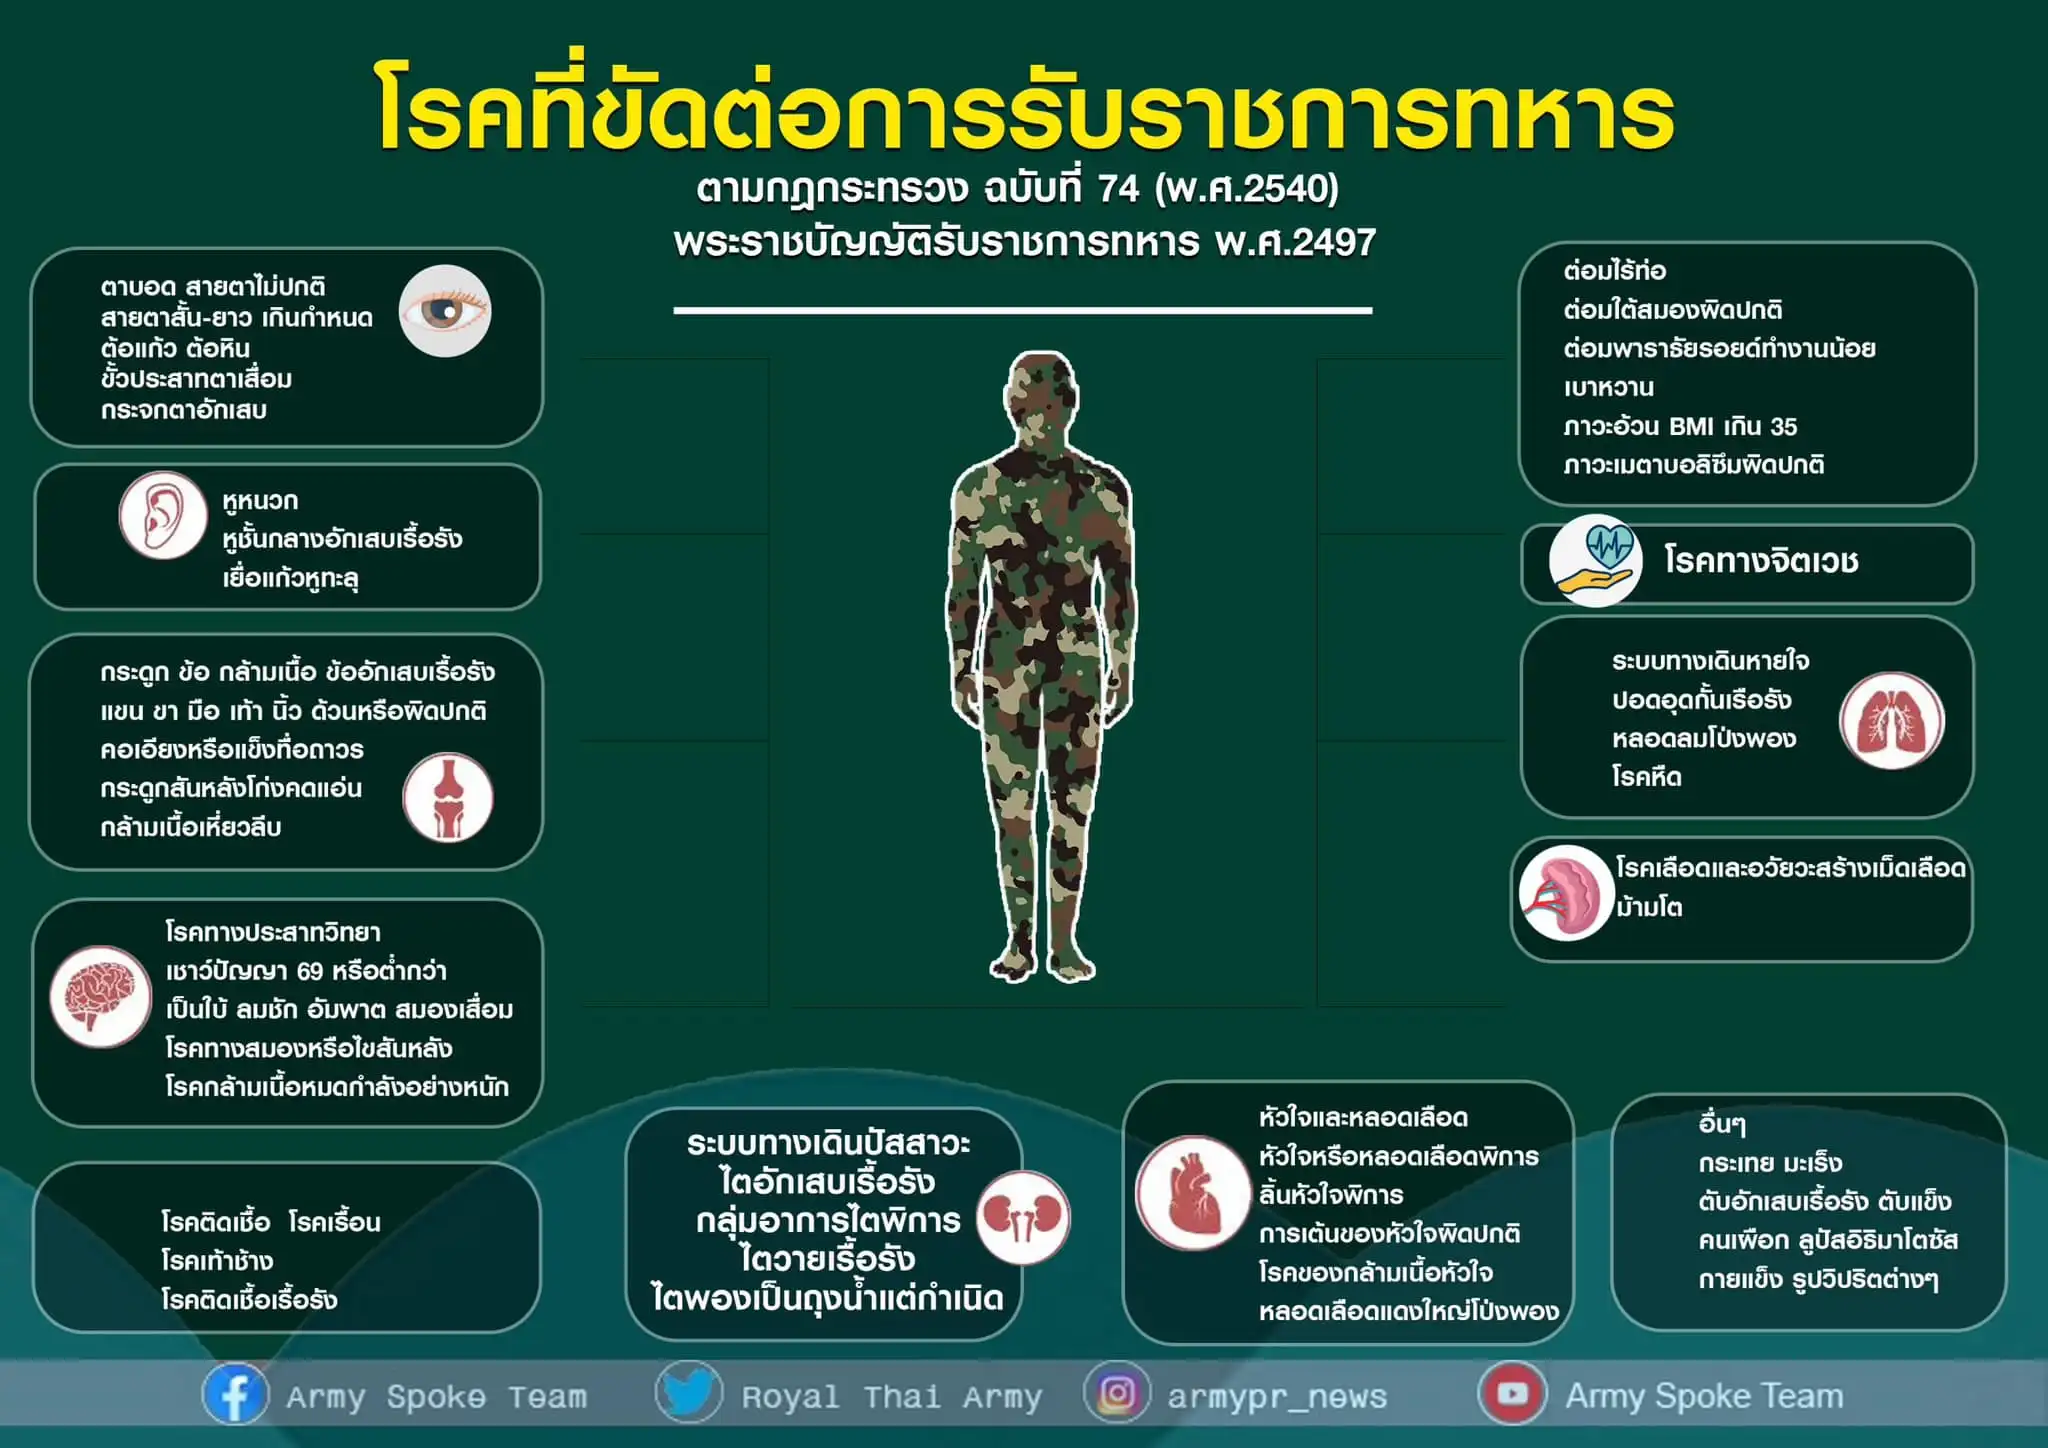 ตรวจโรคก่อนตรวจเลือก (ทหาร) ที่รพ.เหล่าทัพ 26 แห่งทั่วประเทศ HealthServ